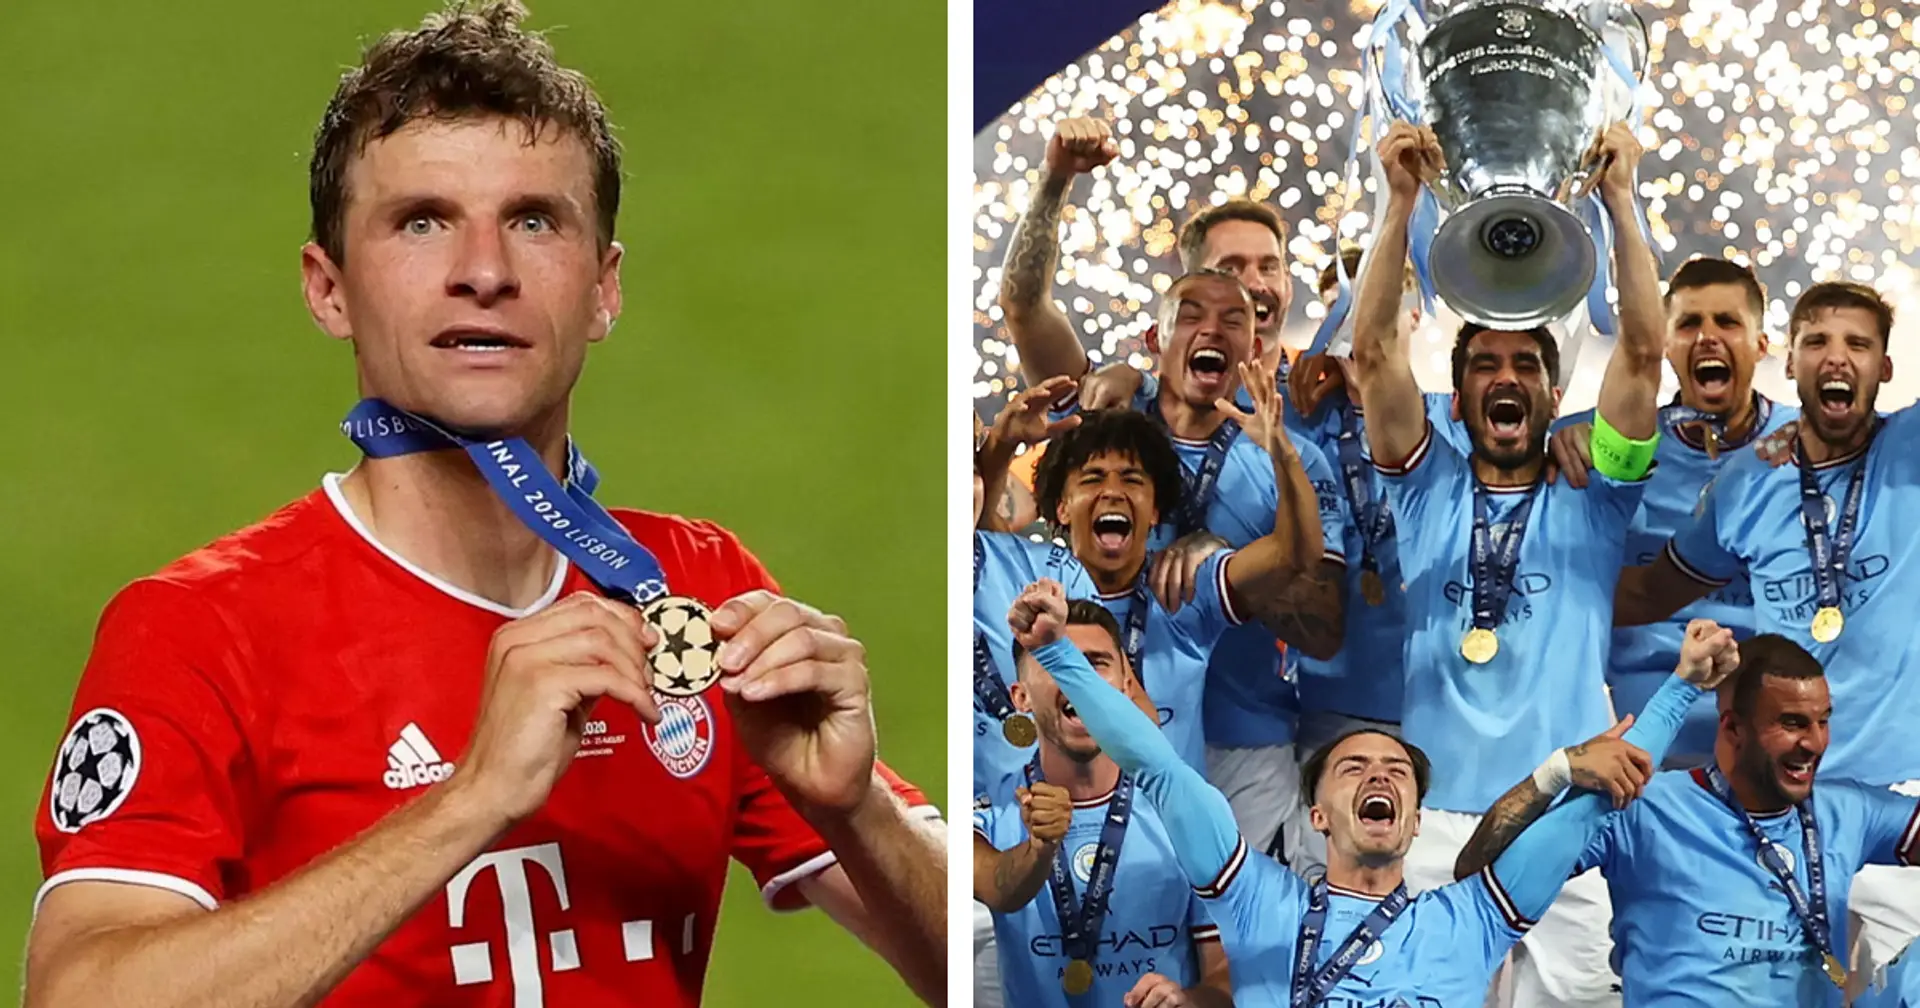 Nur 13 Spieler in Geschichte gewannen zweimal das Triple - fünf davon spielten für Bayern